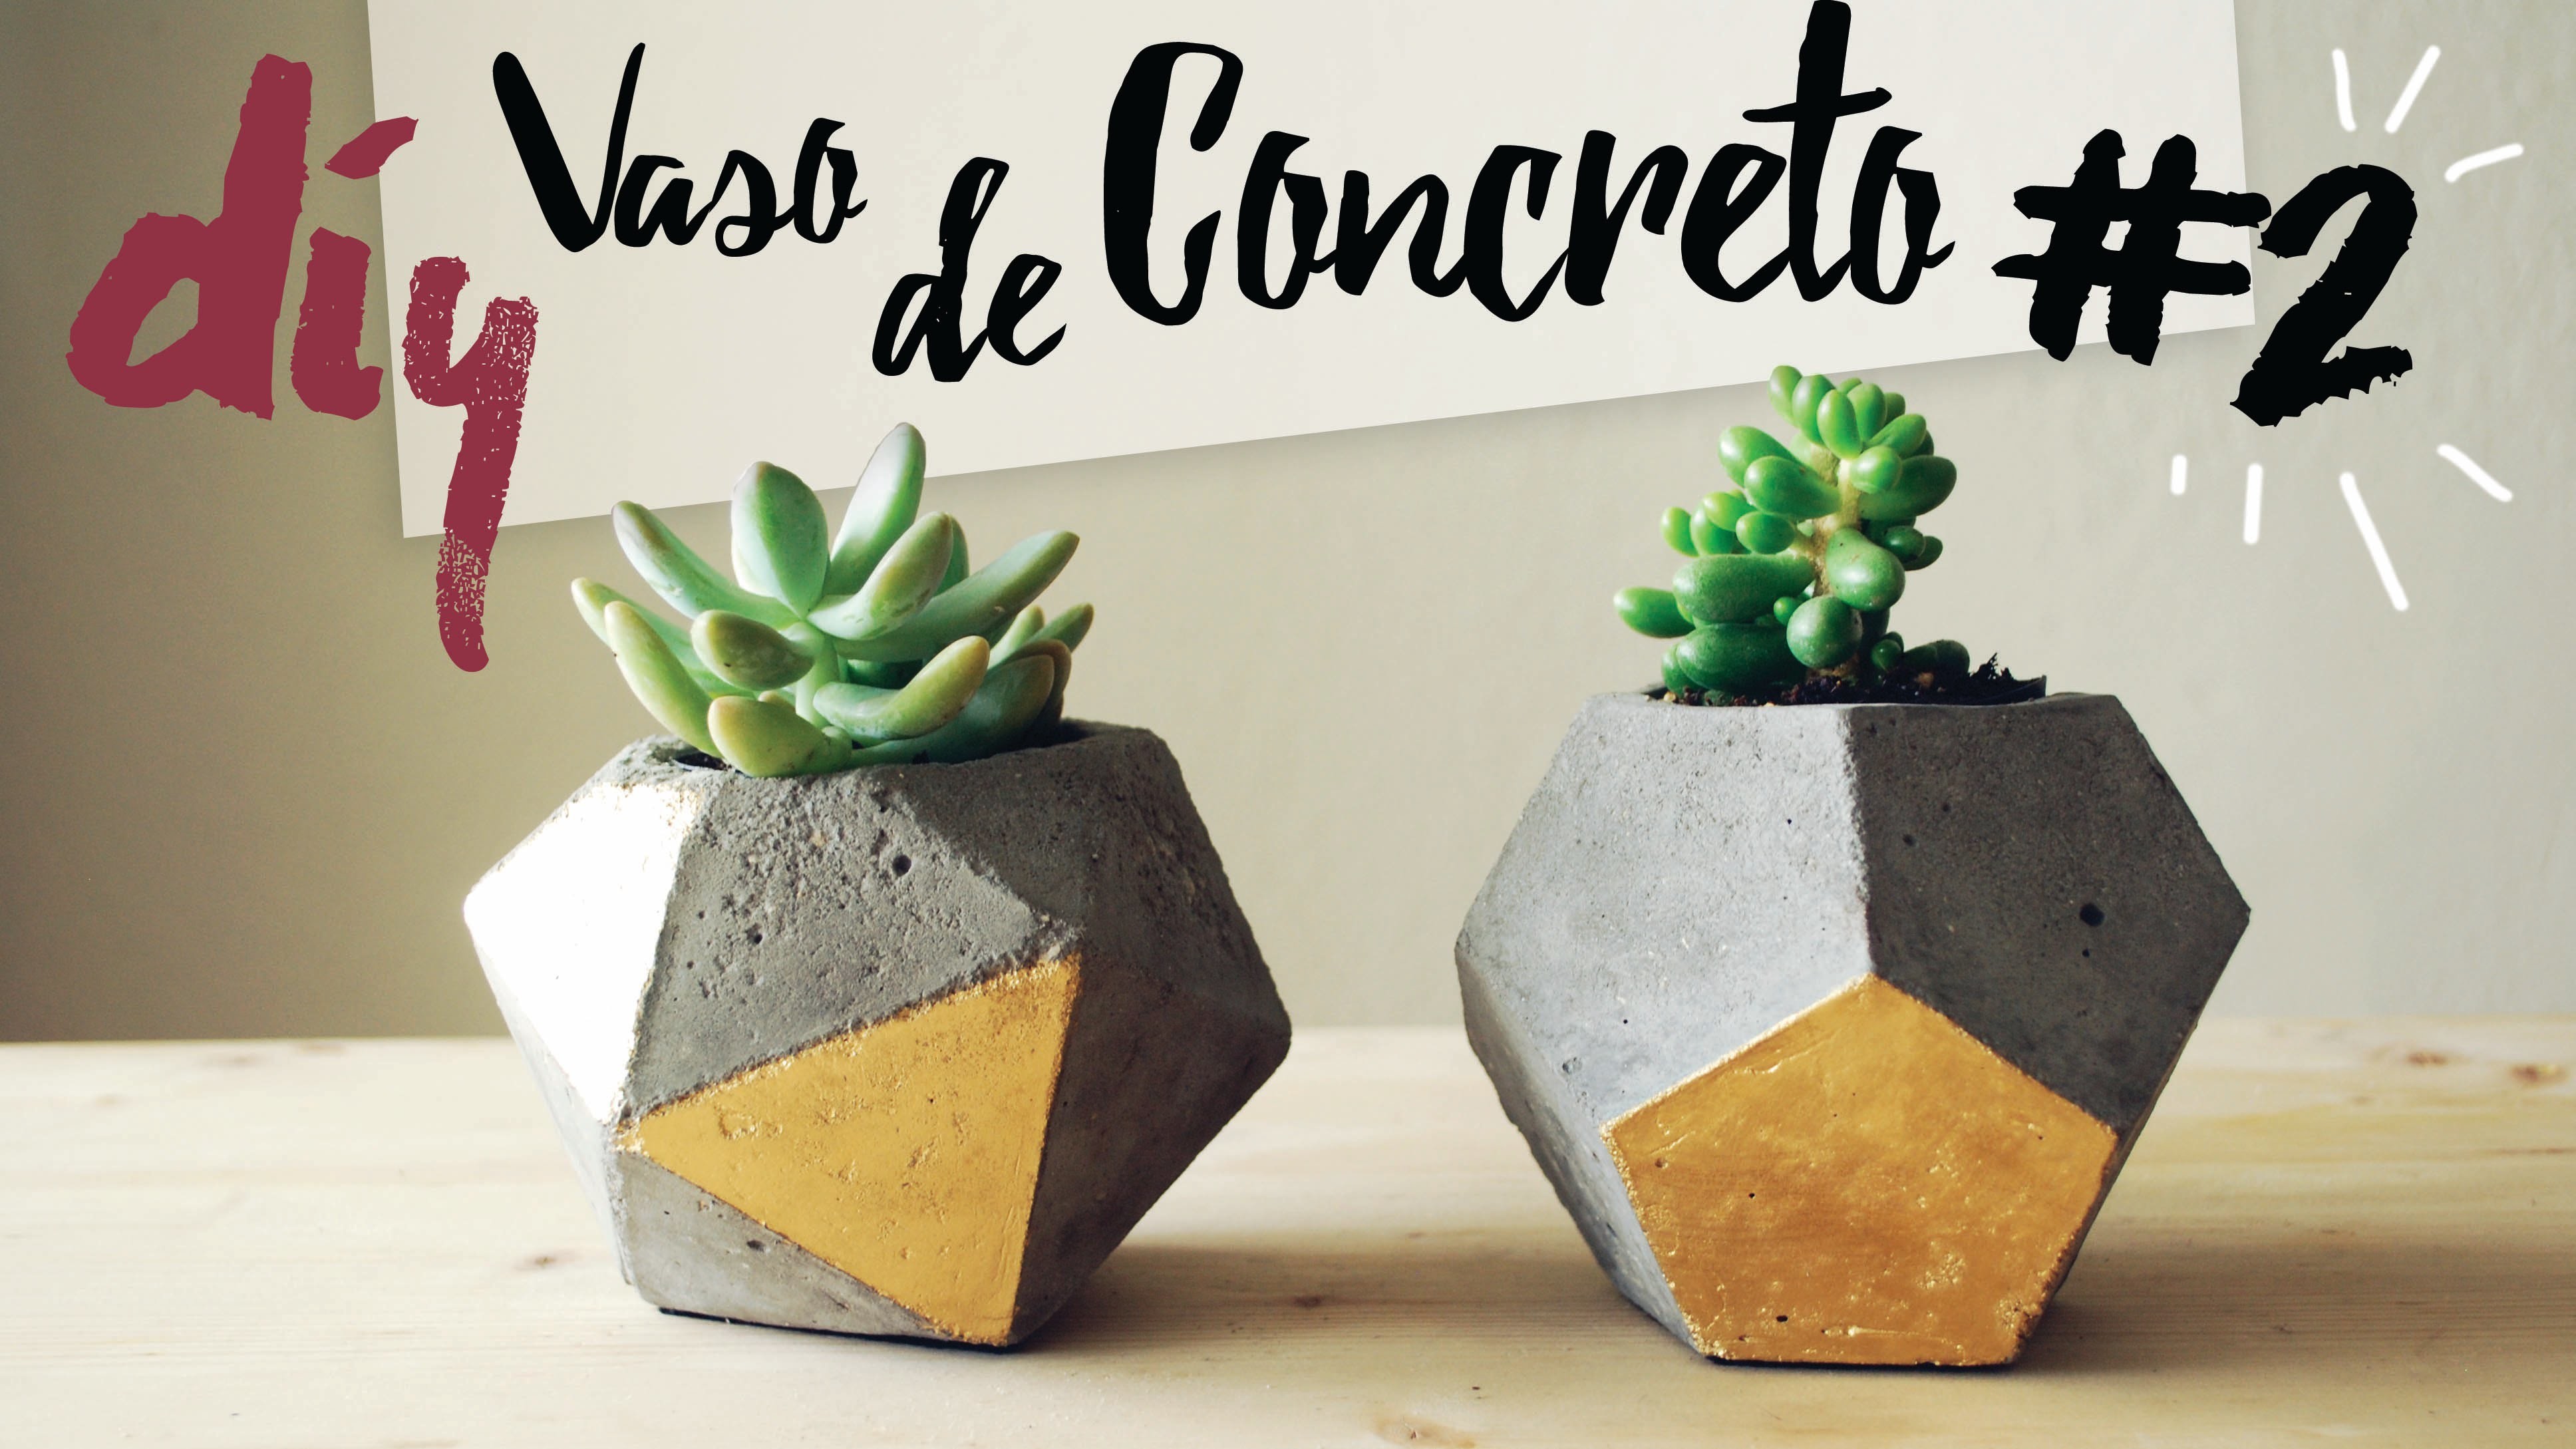 DIY - Vaso de Concreto.Cimento Geométrico #2 por Isabelle Verona